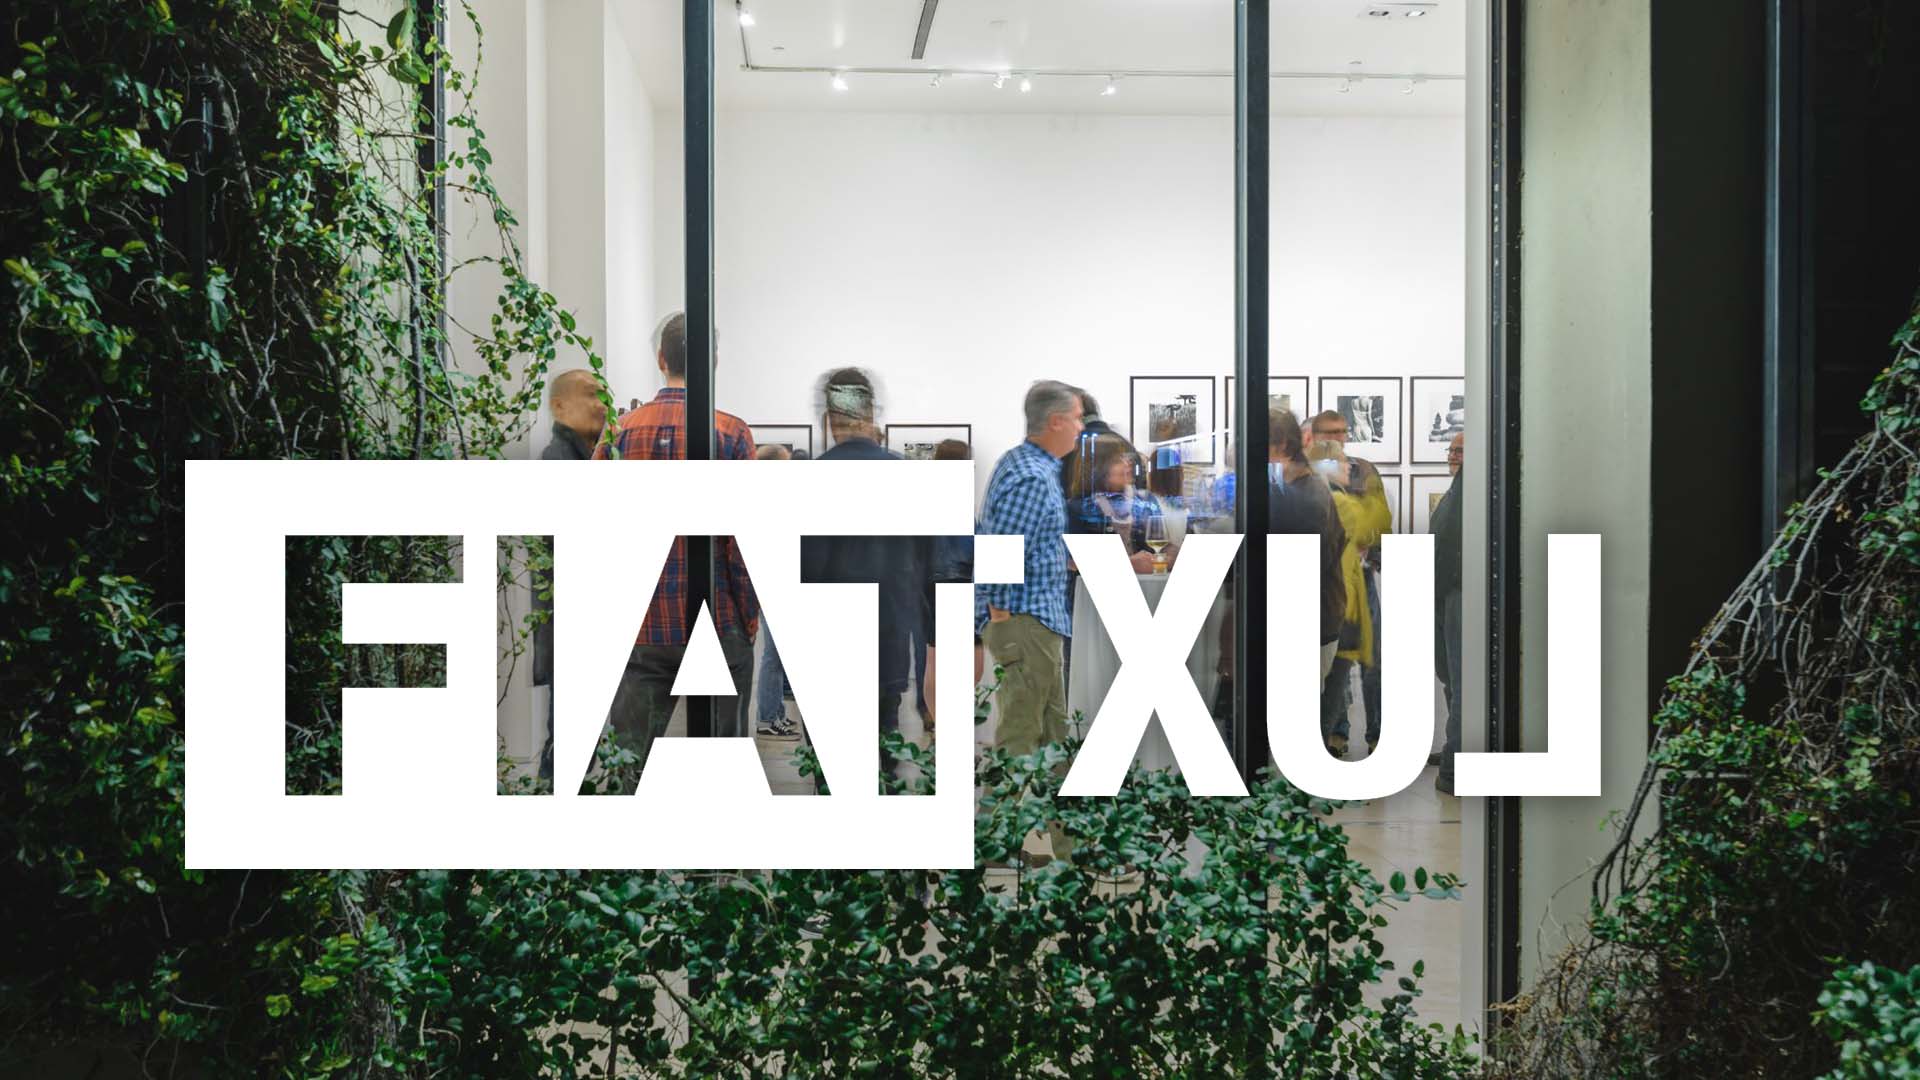 FiatLux Gallery